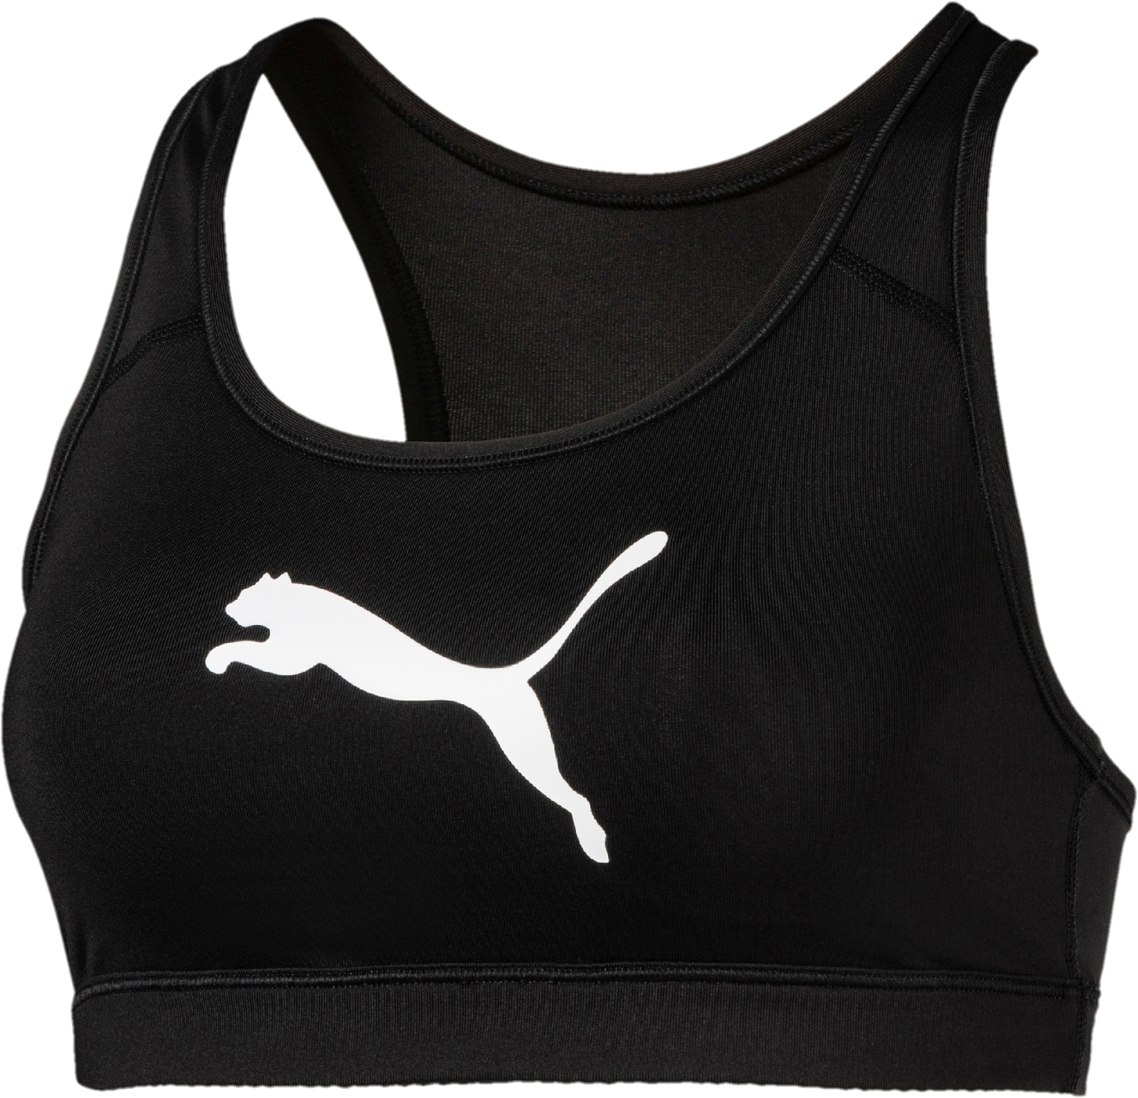 Топ-бра женский Puma 4Keeps Bra PM, цвет: черный, белый. 51699801. Размер XL (48/50)